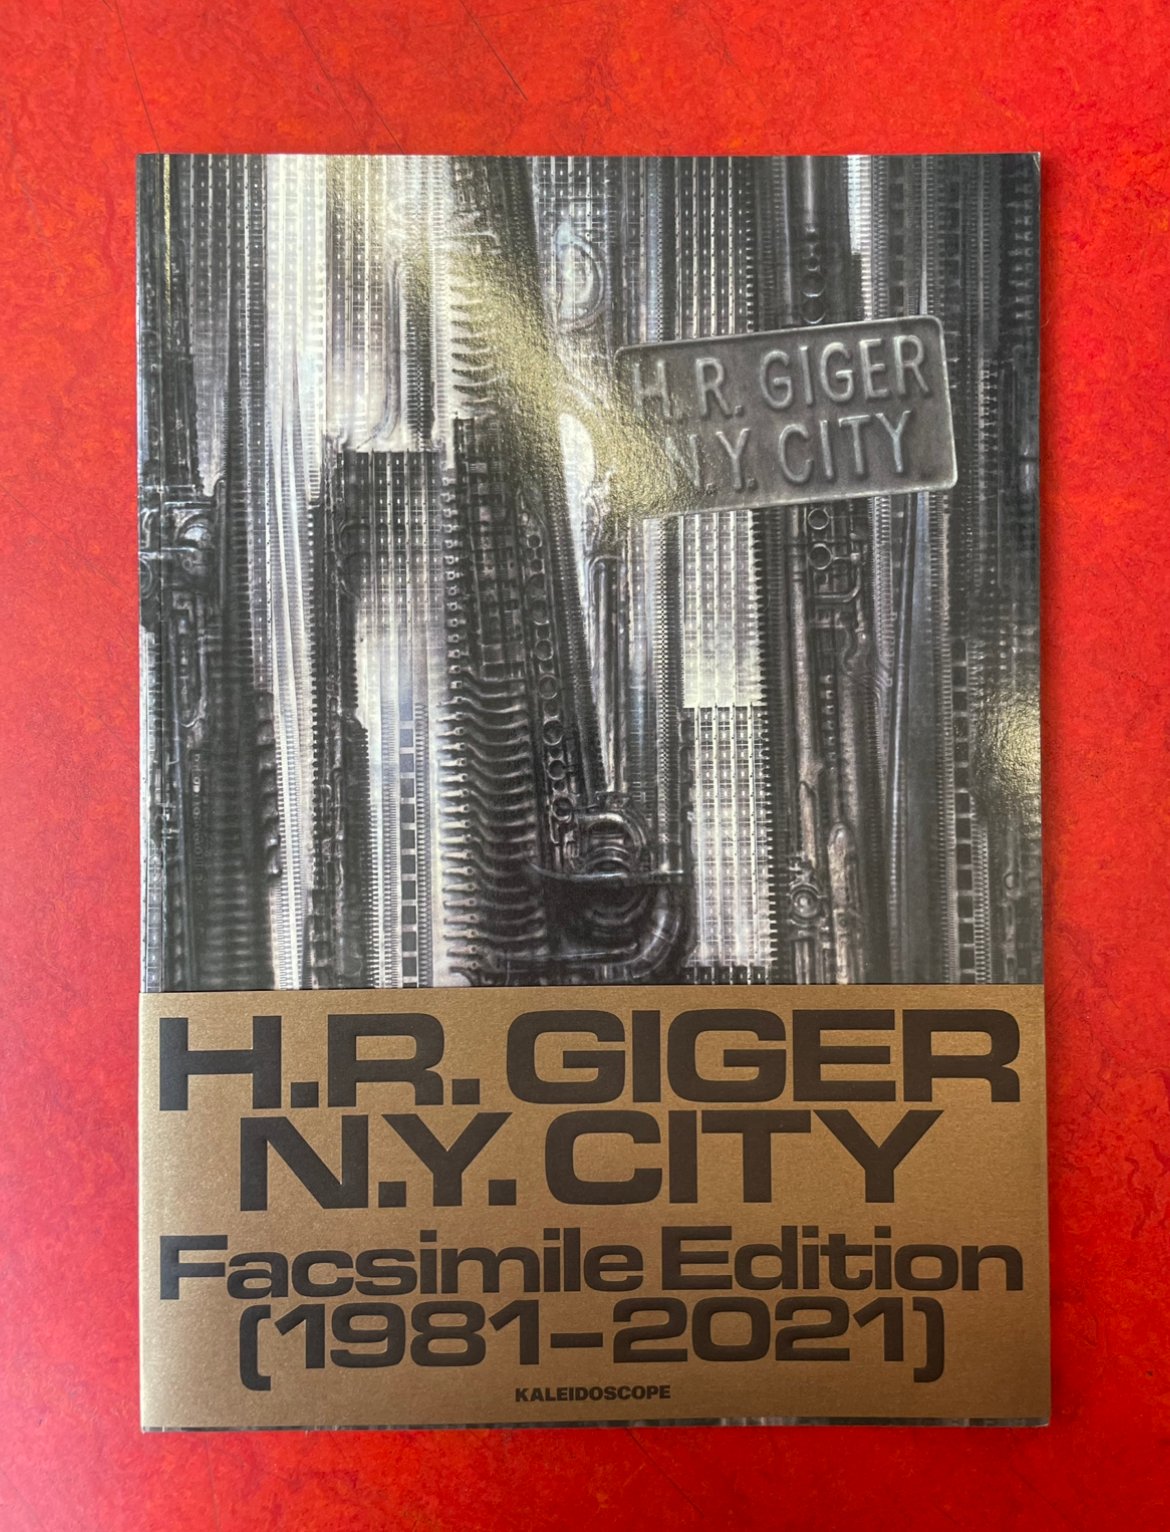 H.R. GIGER N.Y. CITY Facsimile Edition